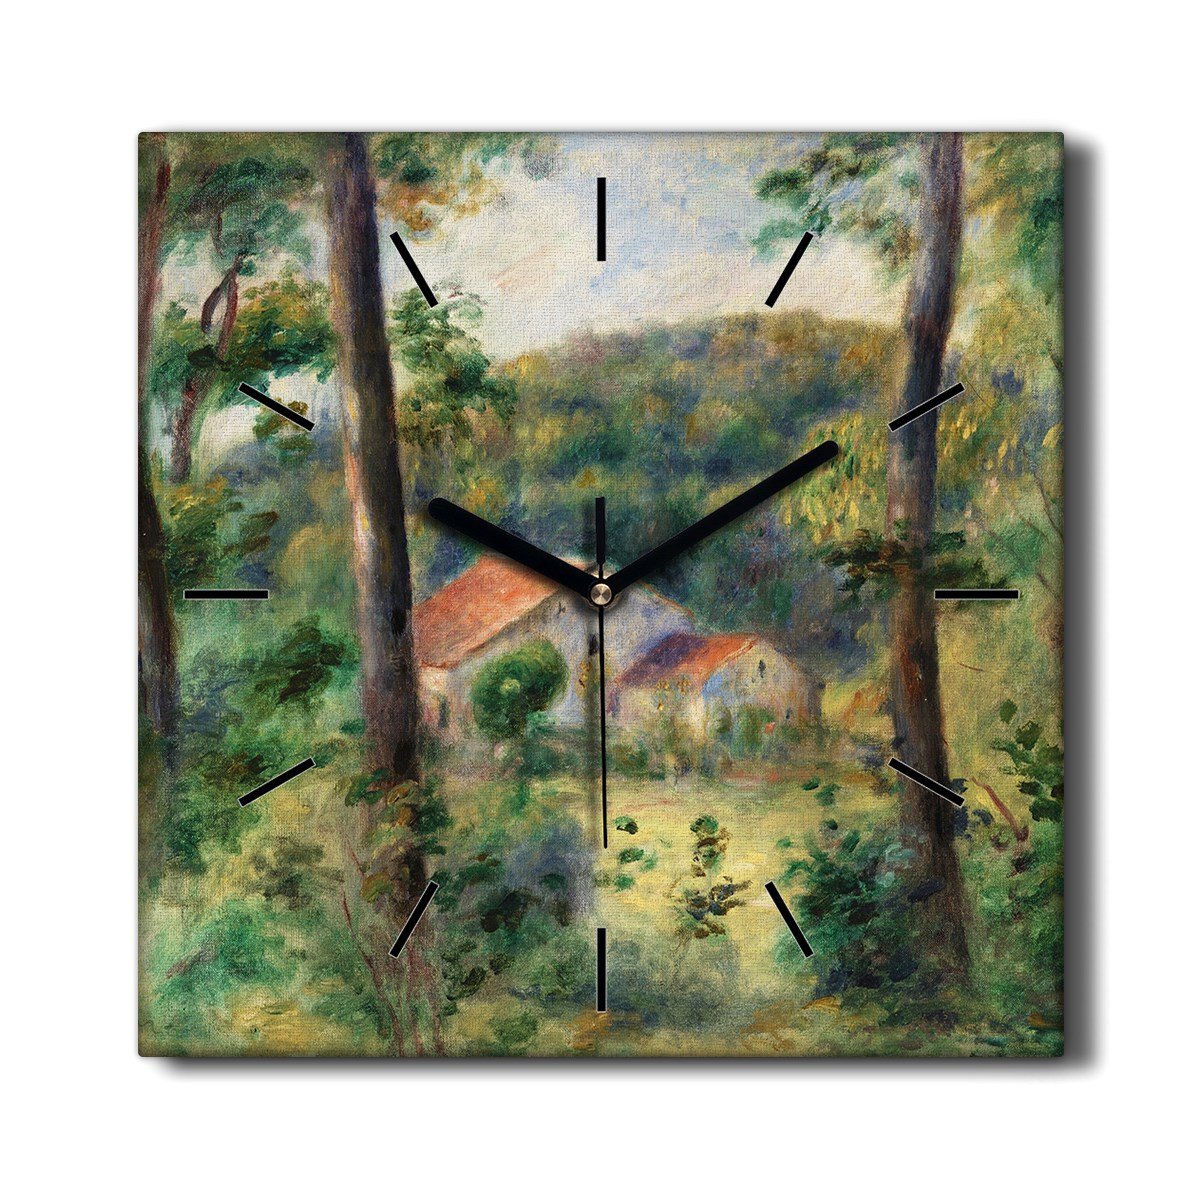 Wiszący zegar na płótnie kuchenny Las dom 30x30 cm, Coloray